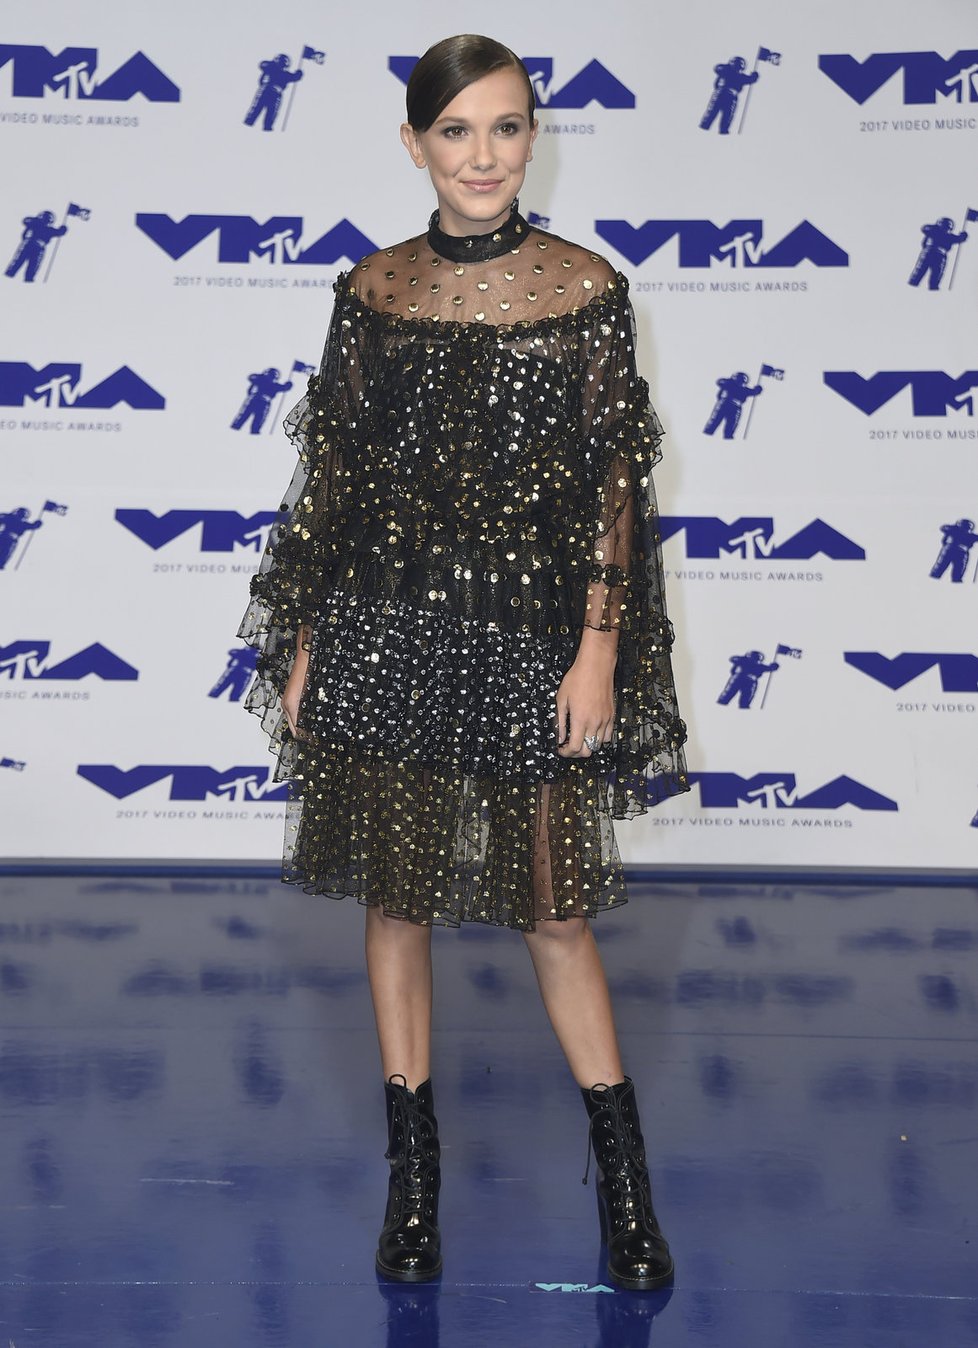 Herečka Millie Bobby Brown na předávání MTV Video Music Awards